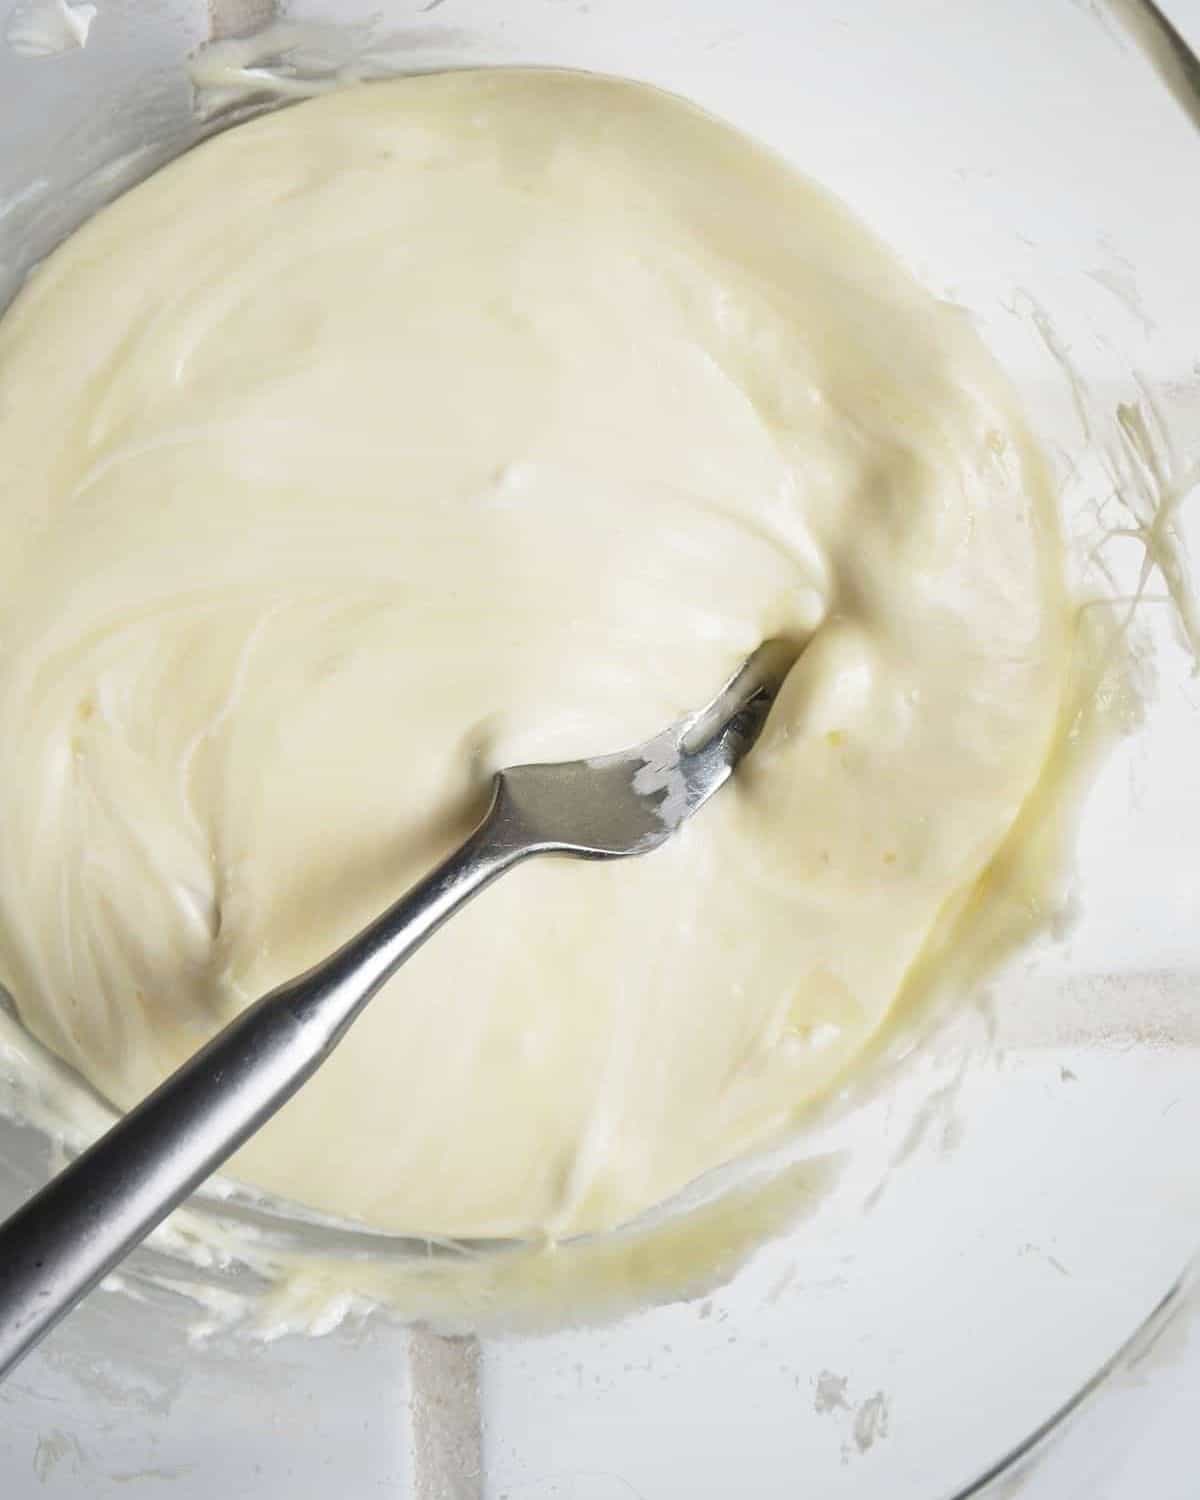  Mozzarella fondue et fromage à la crème dans un bol en verre avec une fourchette en remuant.